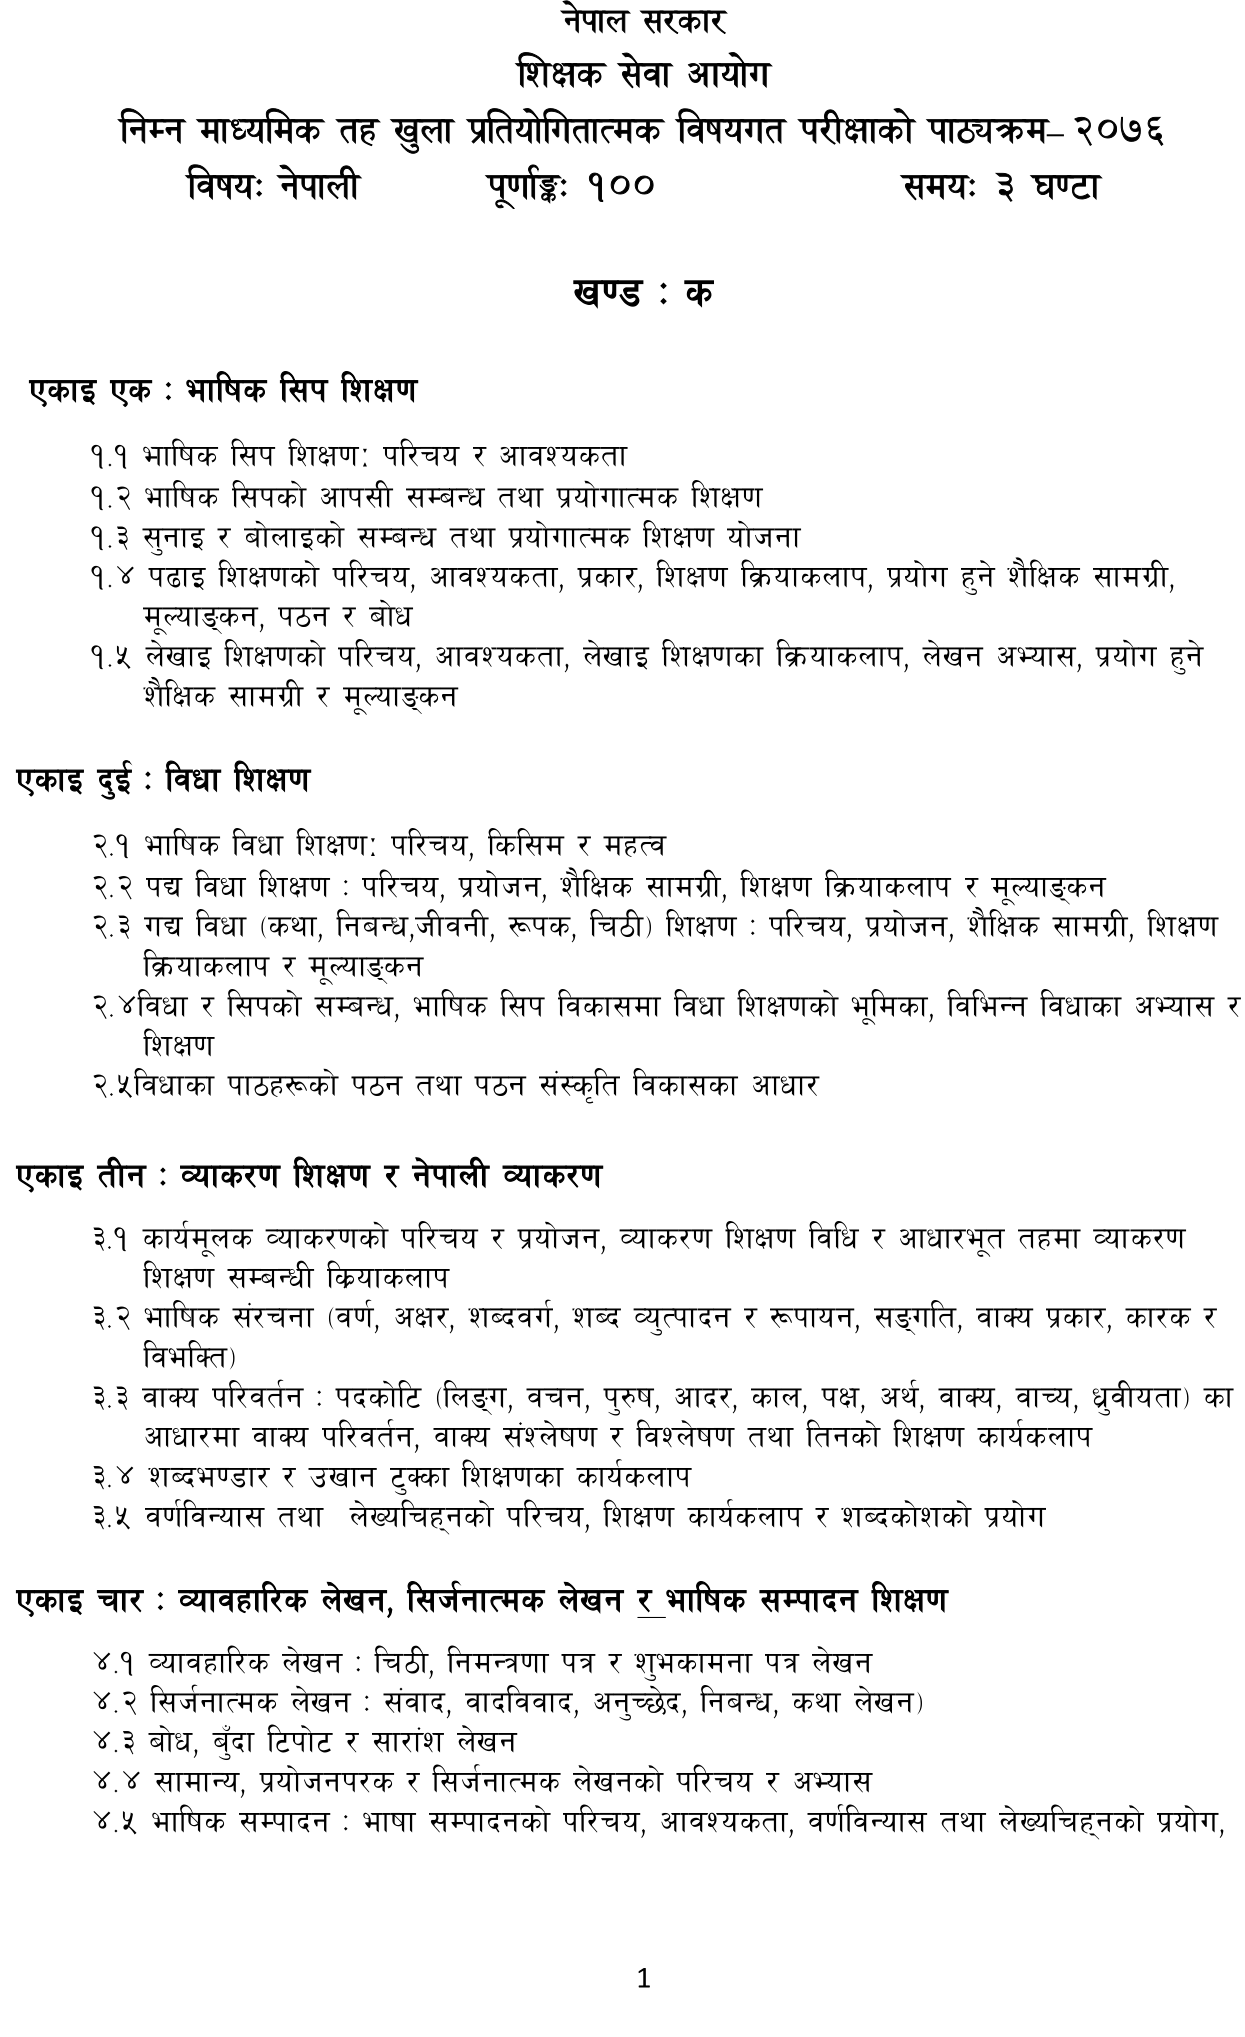 Shikshak Sewa Aayog Curriculum of Lower Secondary Level Nepali :- We will put the Shikshak Sewa Aayog lower secondary level Nepali Subject syllabus in this post.